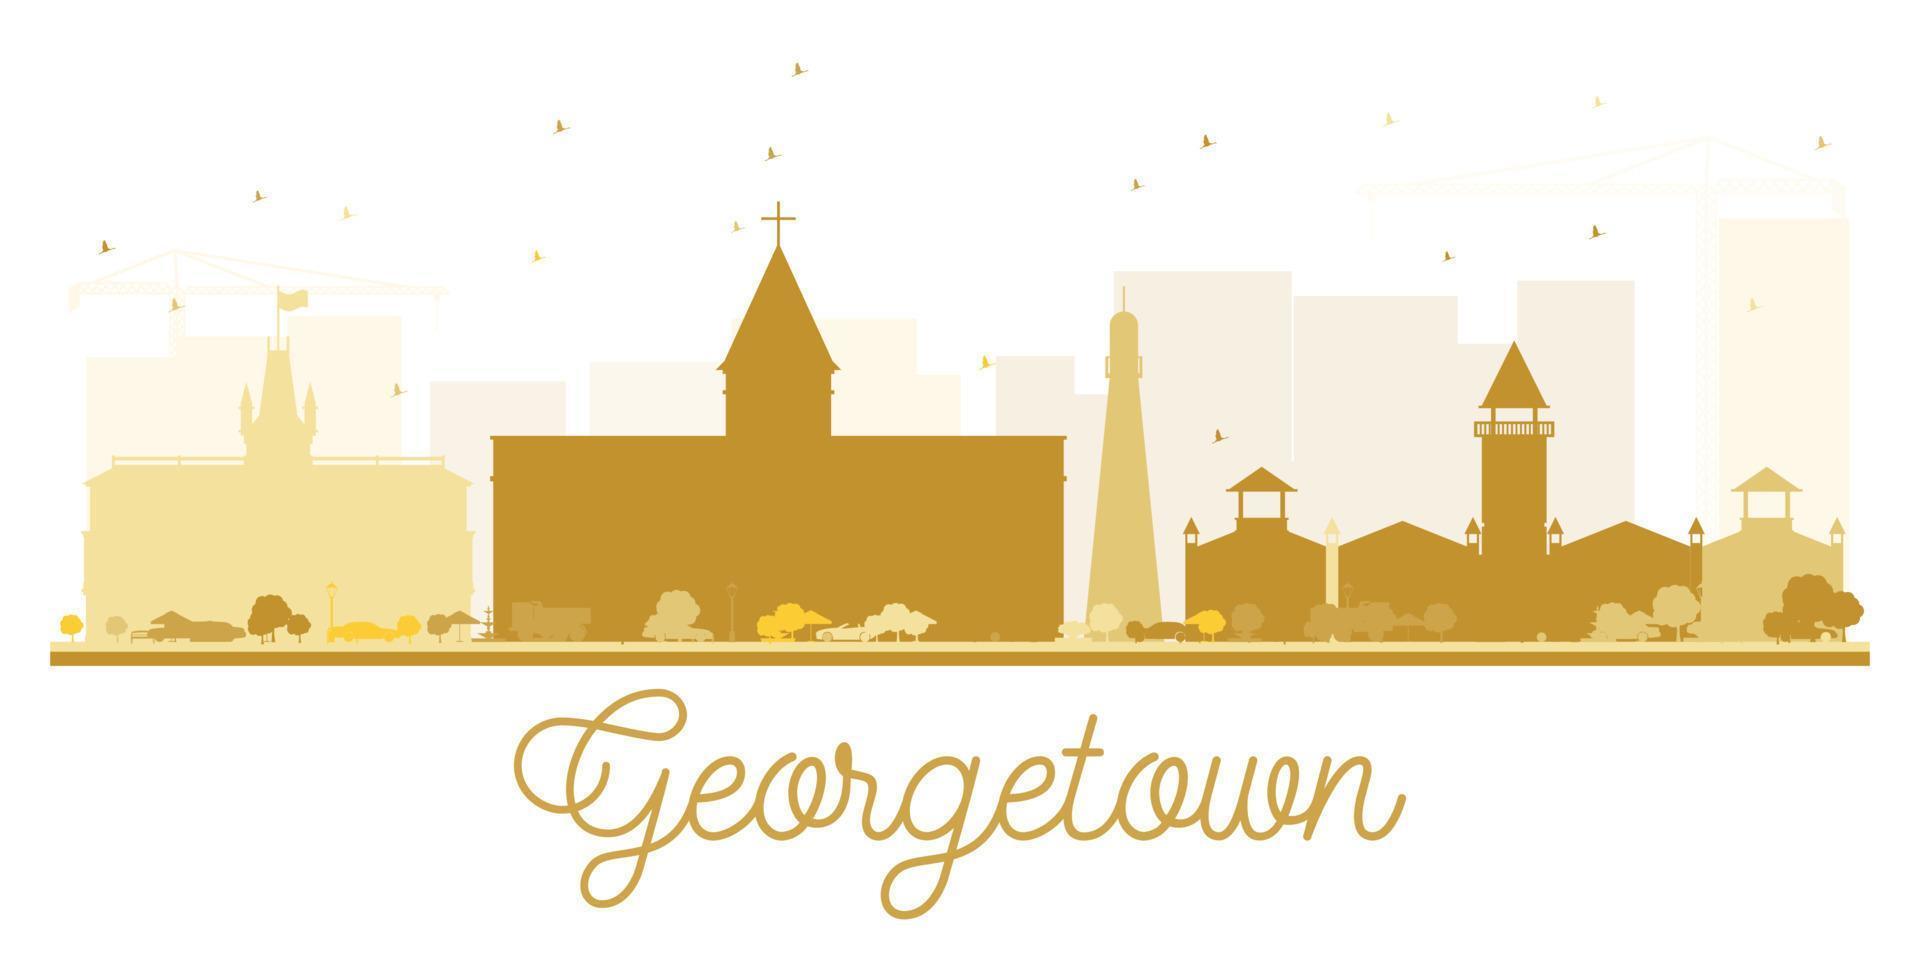 silueta dorada del horizonte de la ciudad de georgetown. vector